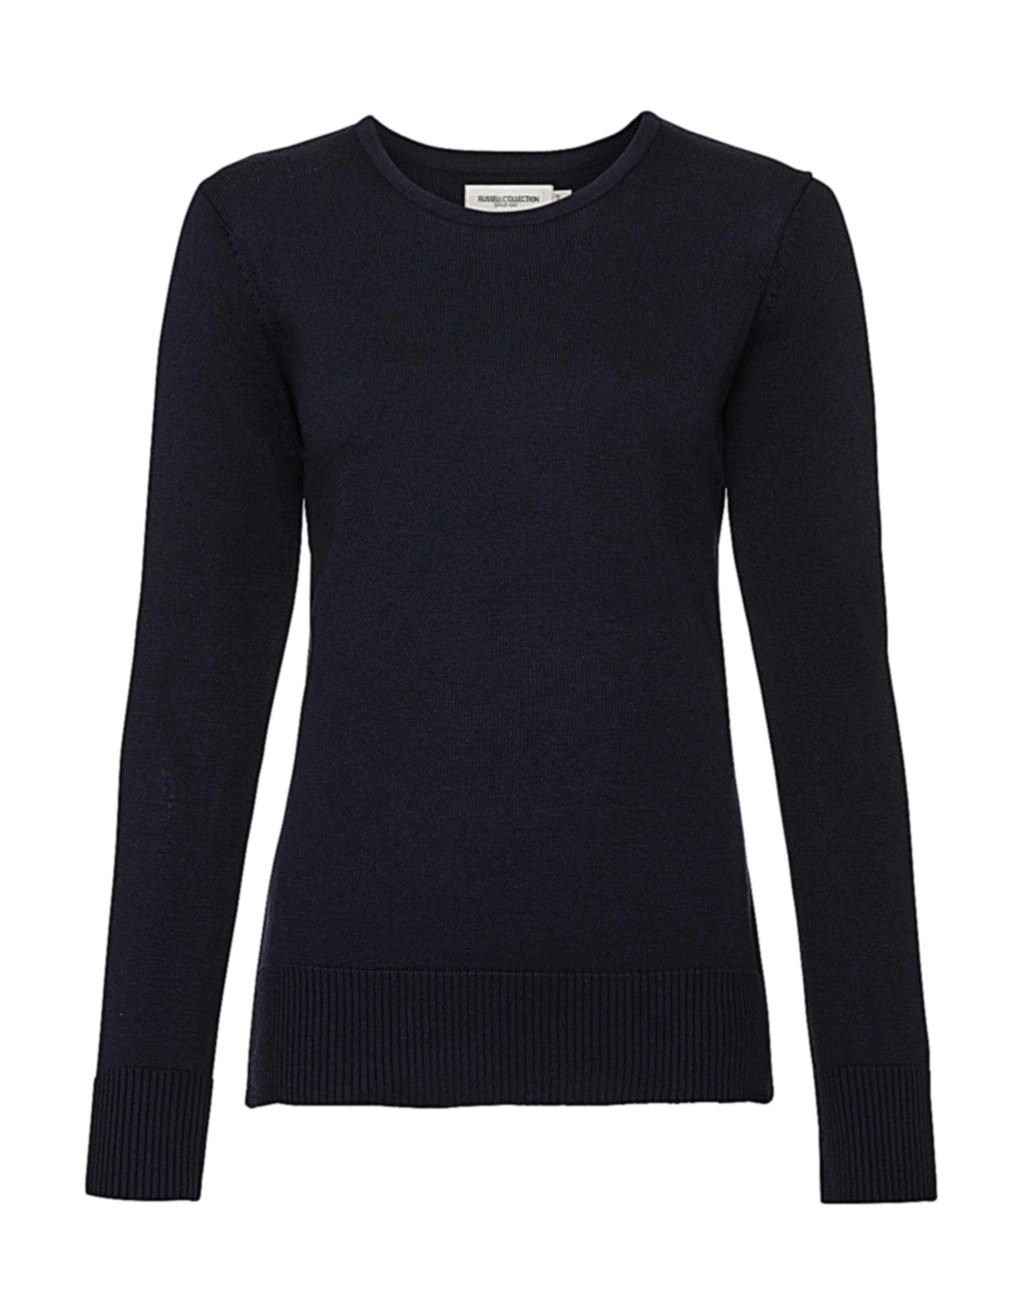 Ladies` Crew Neck Knitted Pullover zum Besticken und Bedrucken in der Farbe French Navy mit Ihren Logo, Schriftzug oder Motiv.